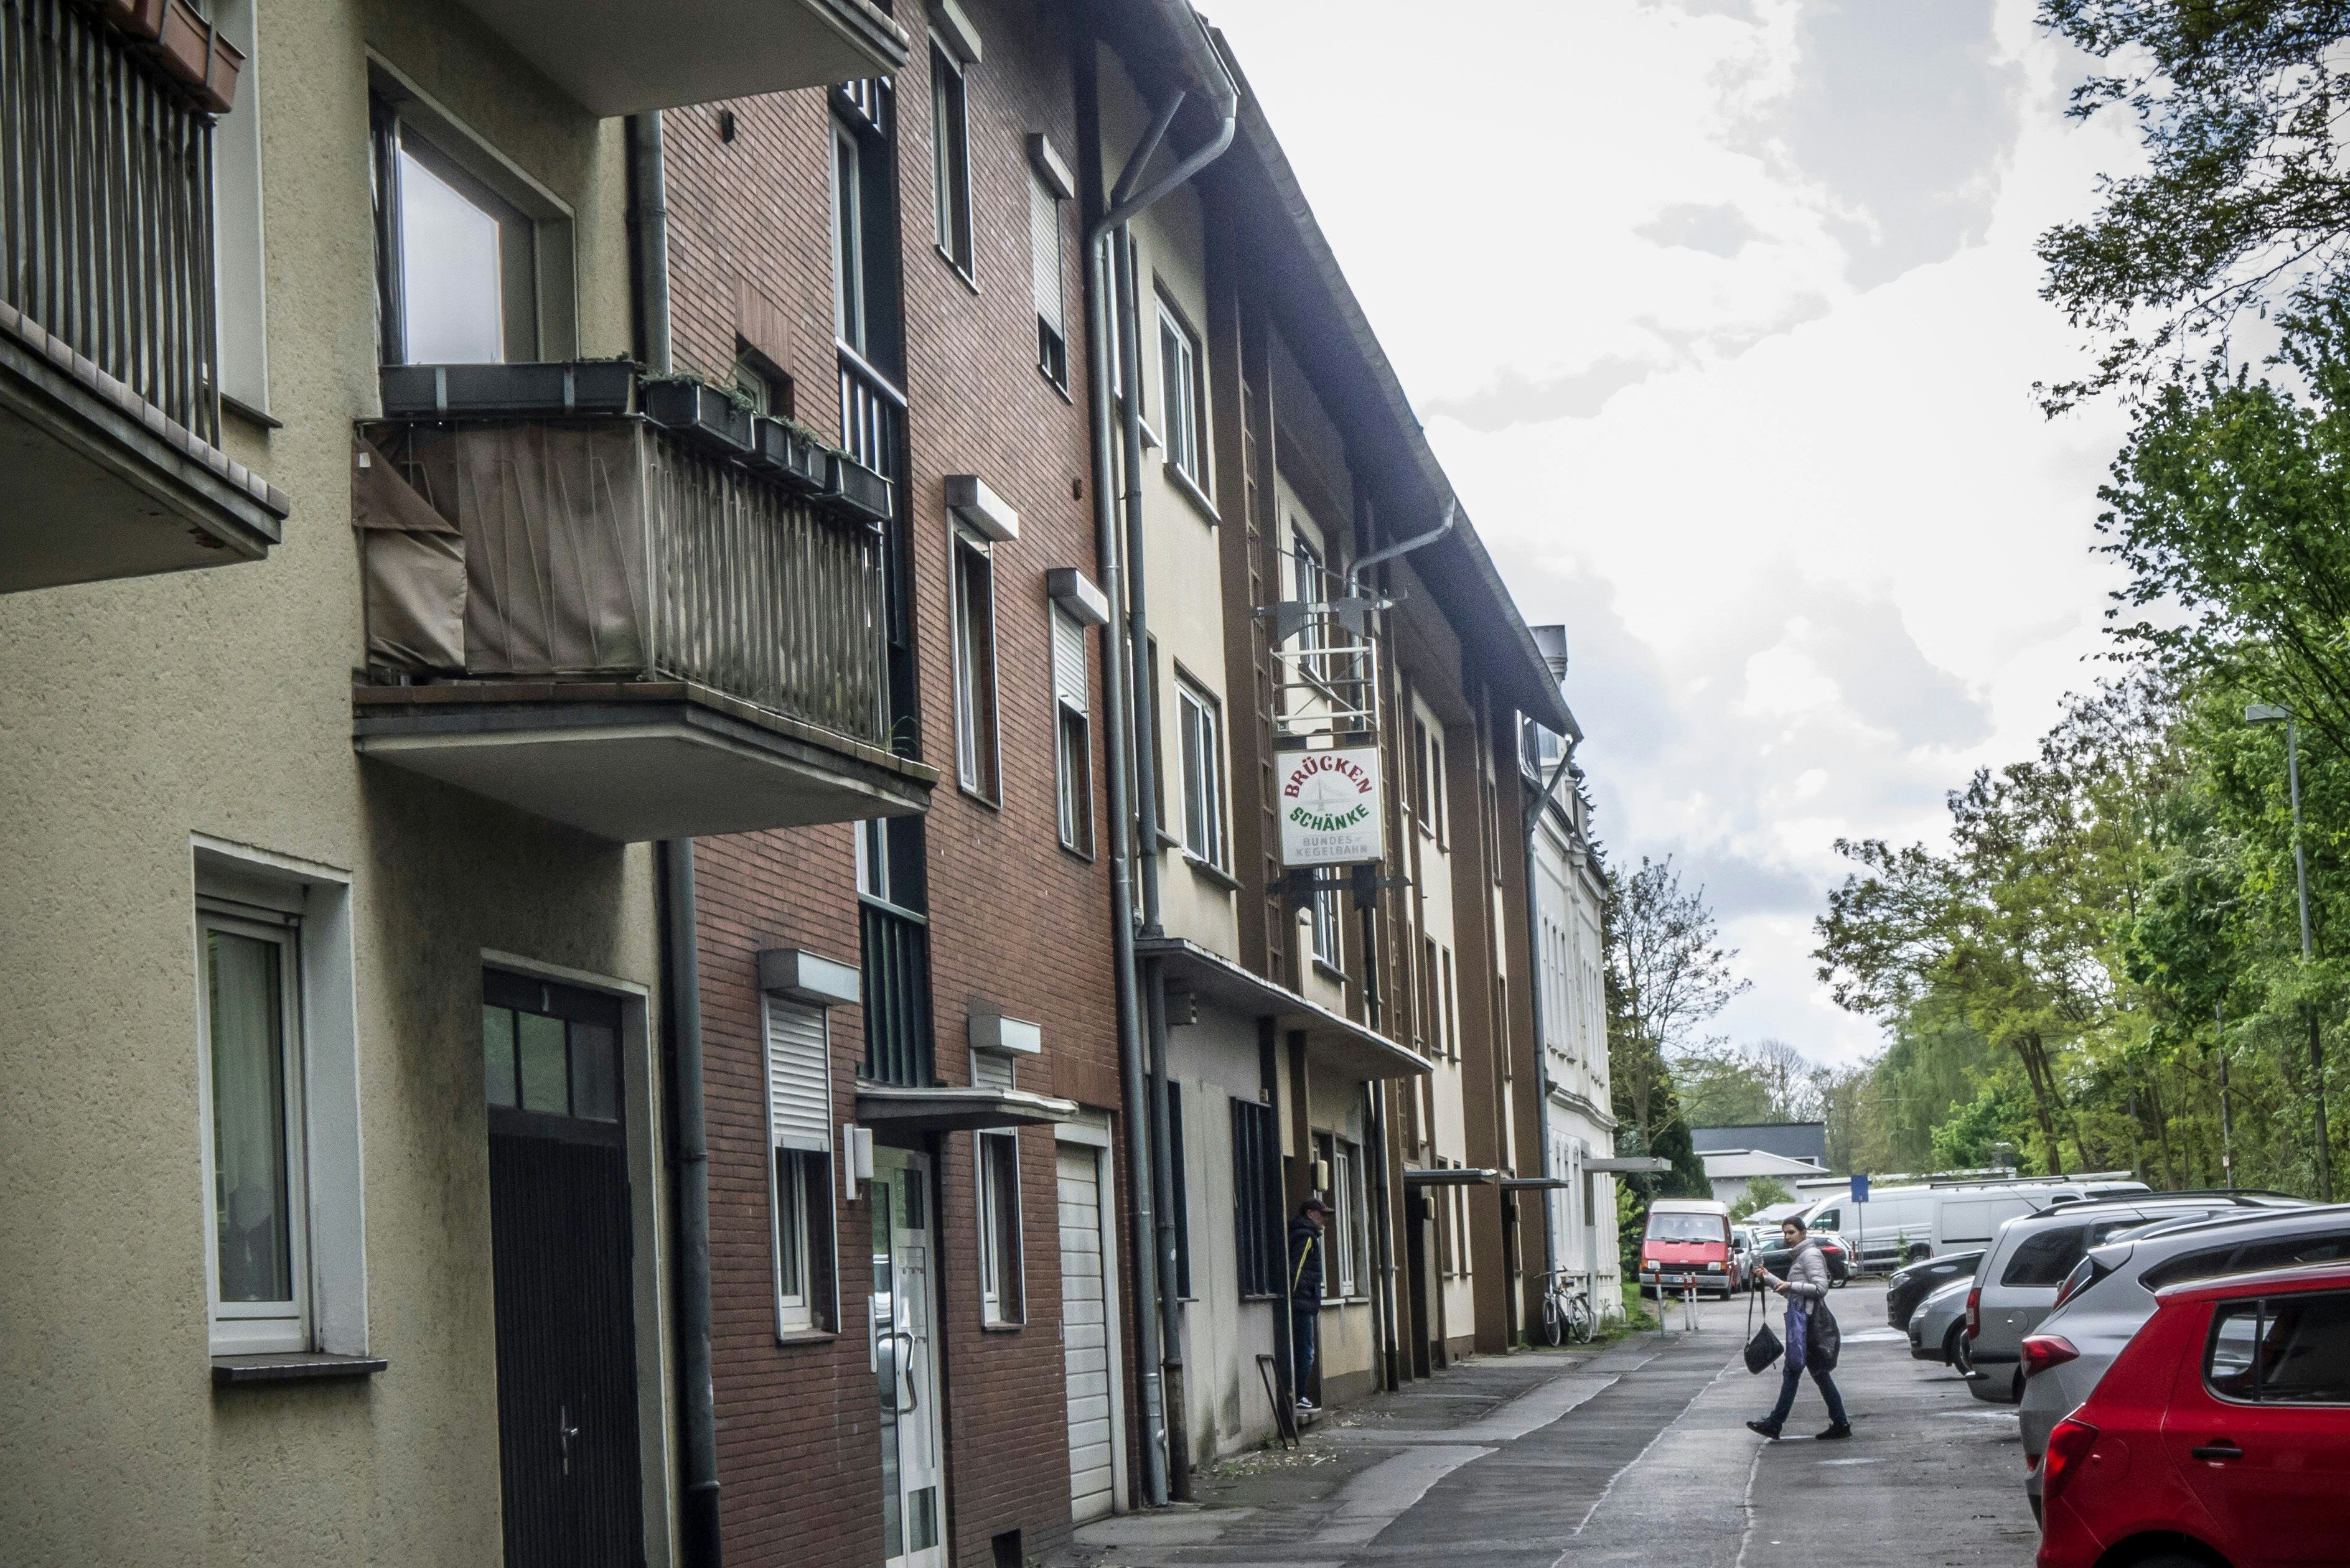 vermüllte sozialwohnung: stadt leverkusen zahlt hauseigentümer nichts für renovierung